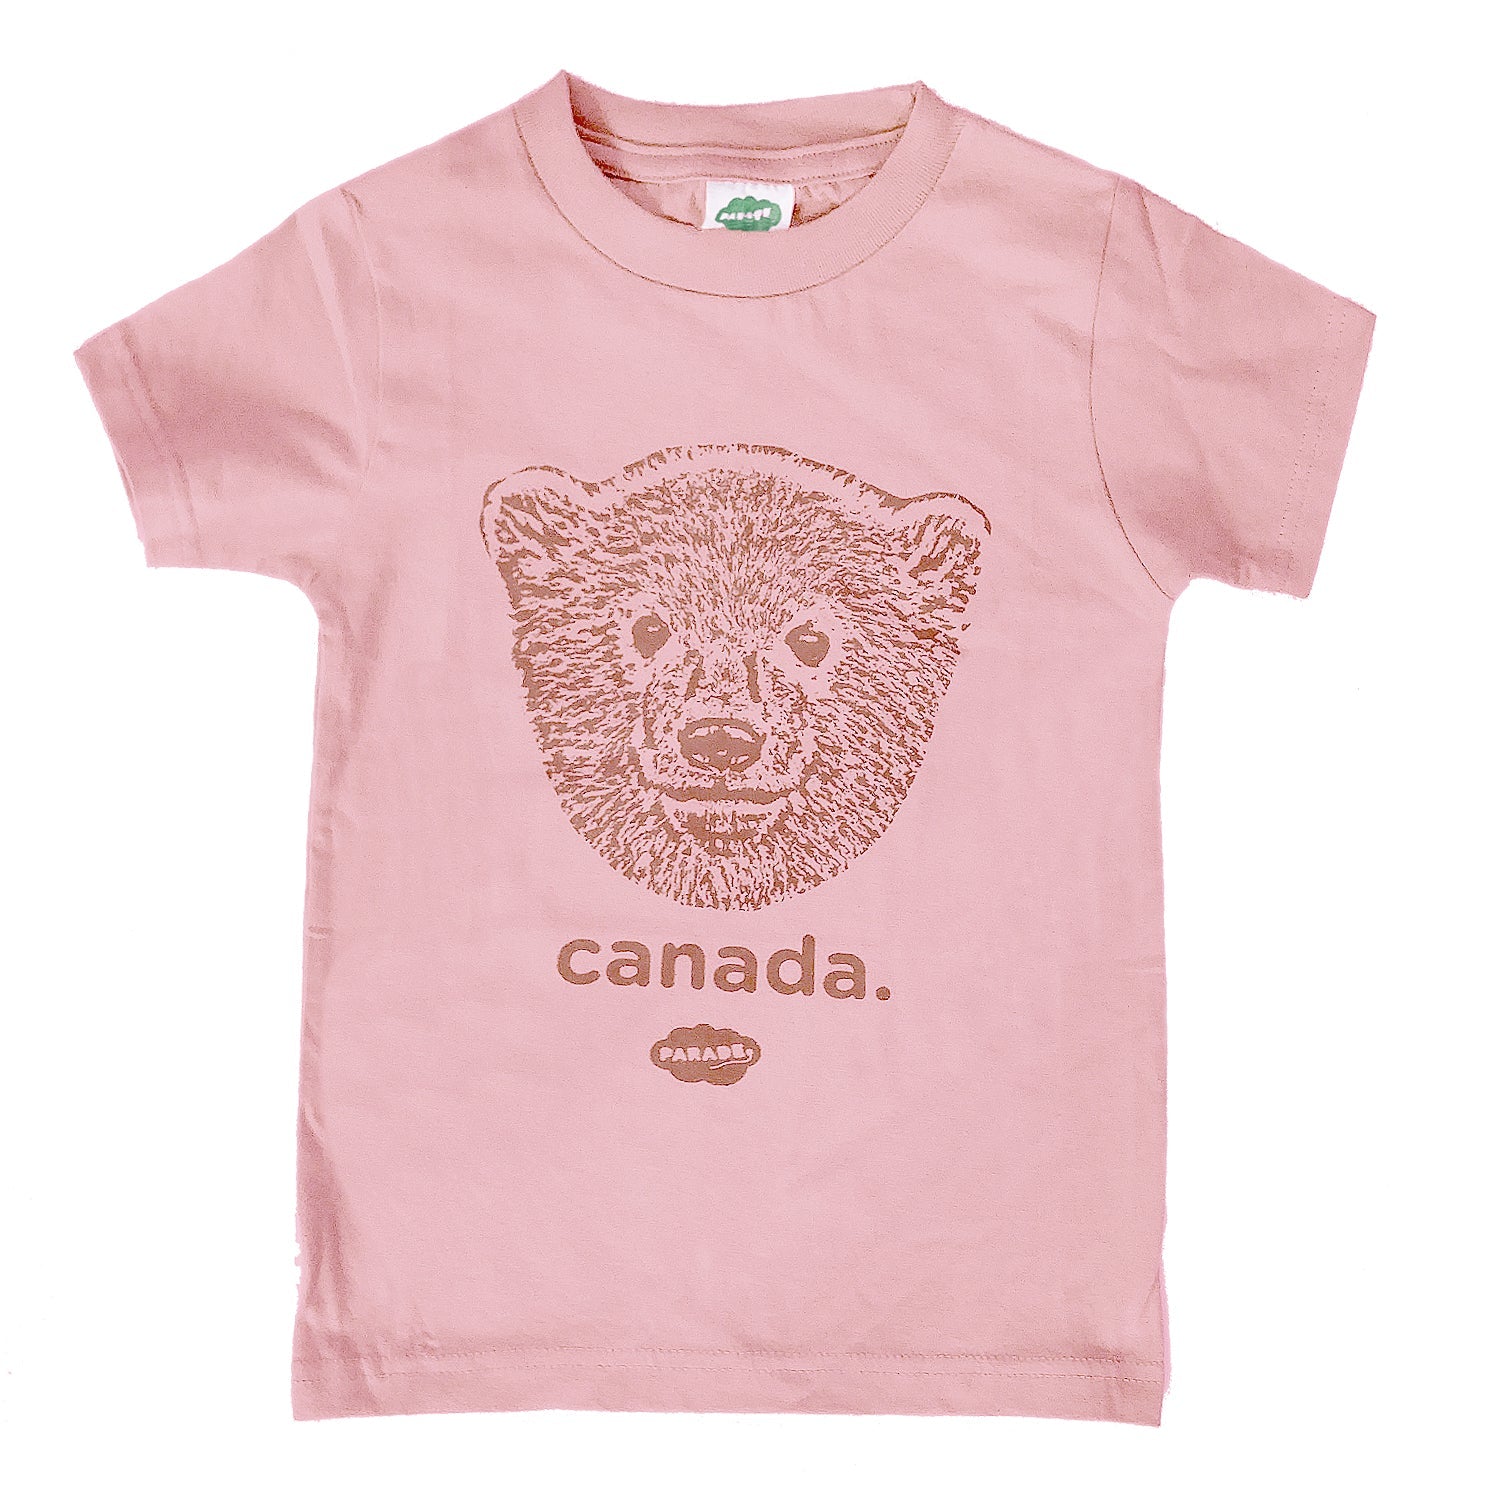 SS24_CANADA_TEE_bear_pink_5ca99364-2e1a-4d3f-893d-75477ba71edc.jpg